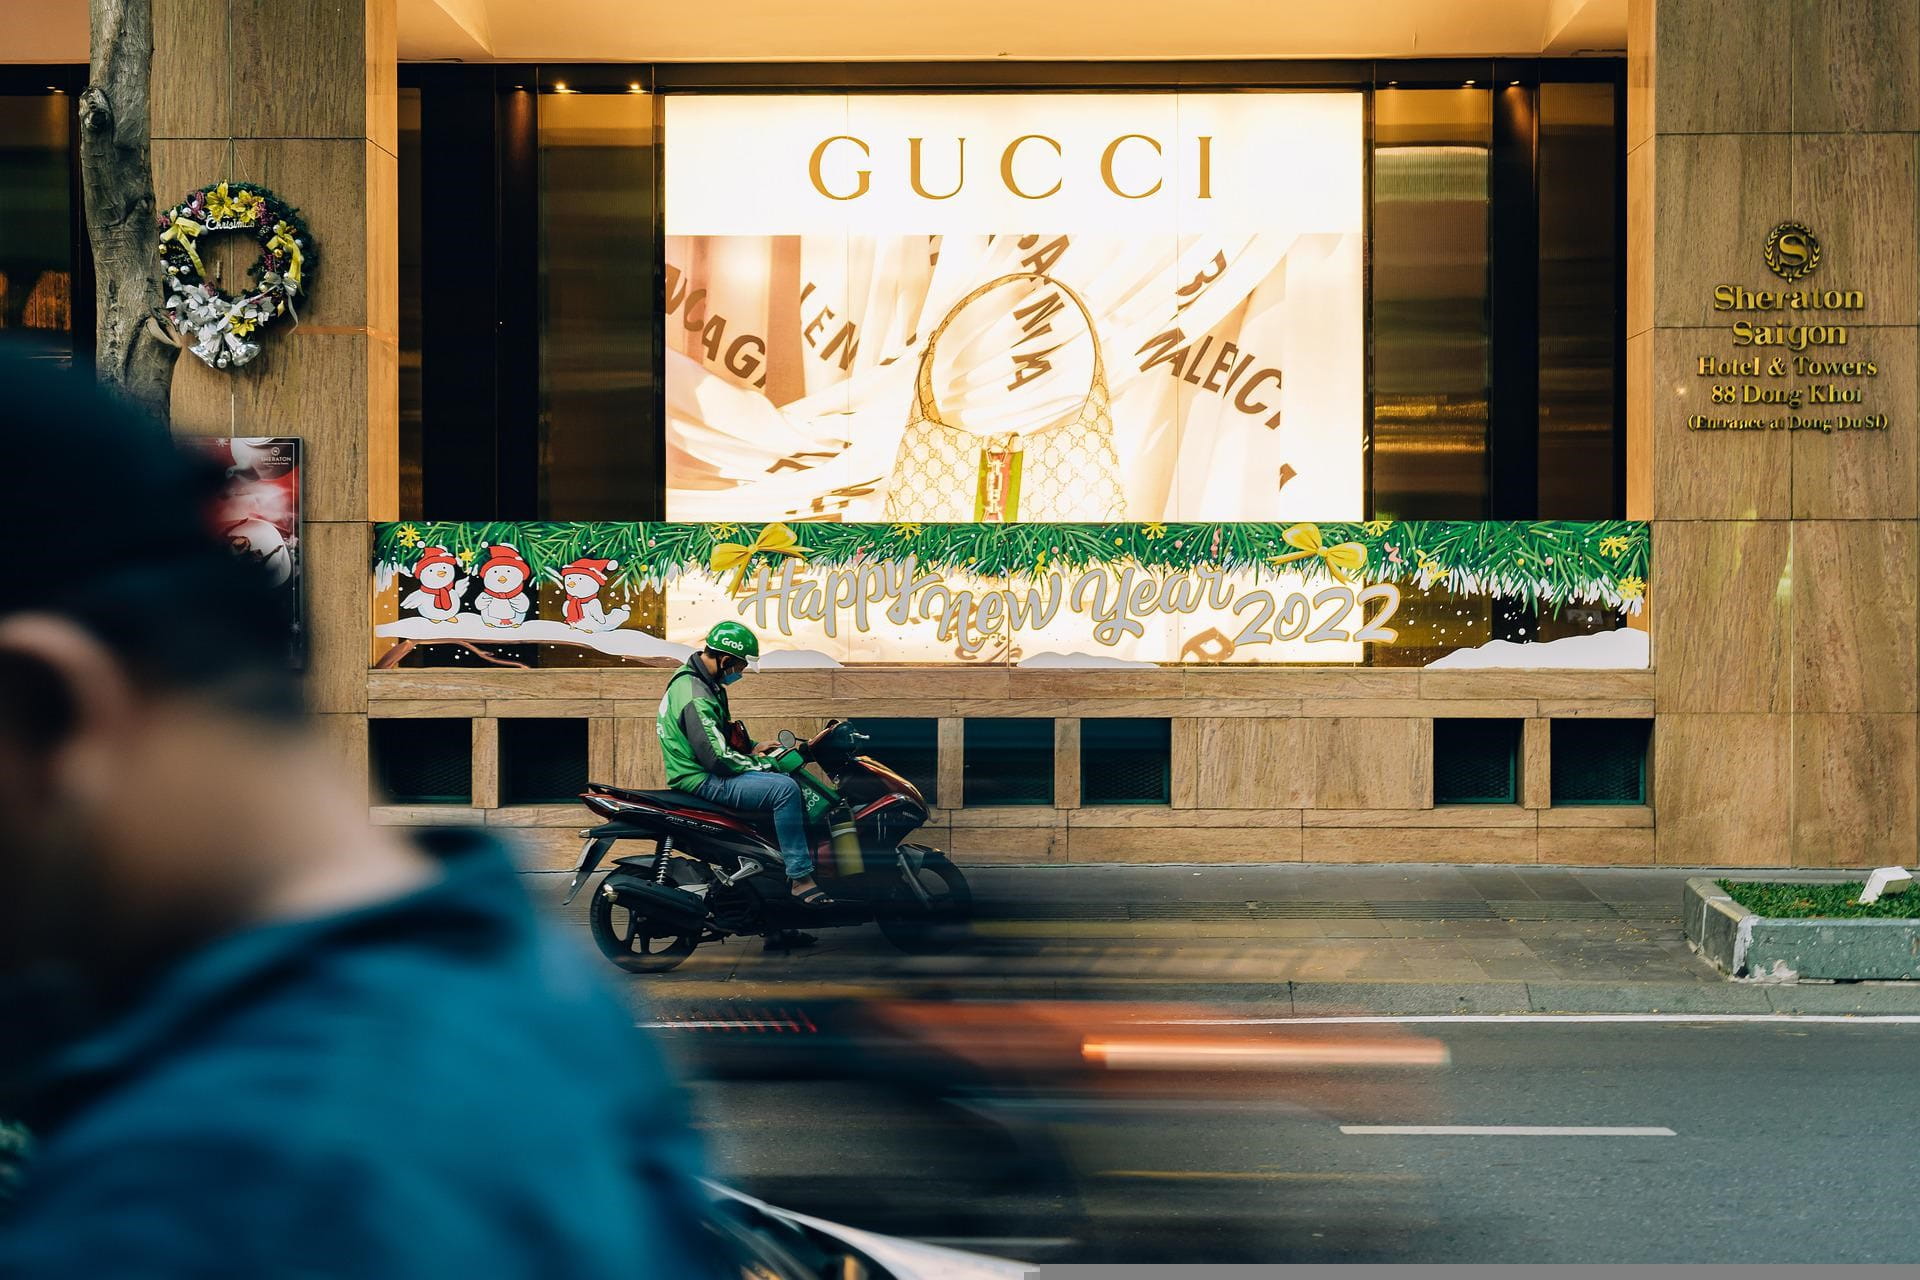 Ein Gucci Werbeplakat im Fenster des Sheraton Saigon Hotels.